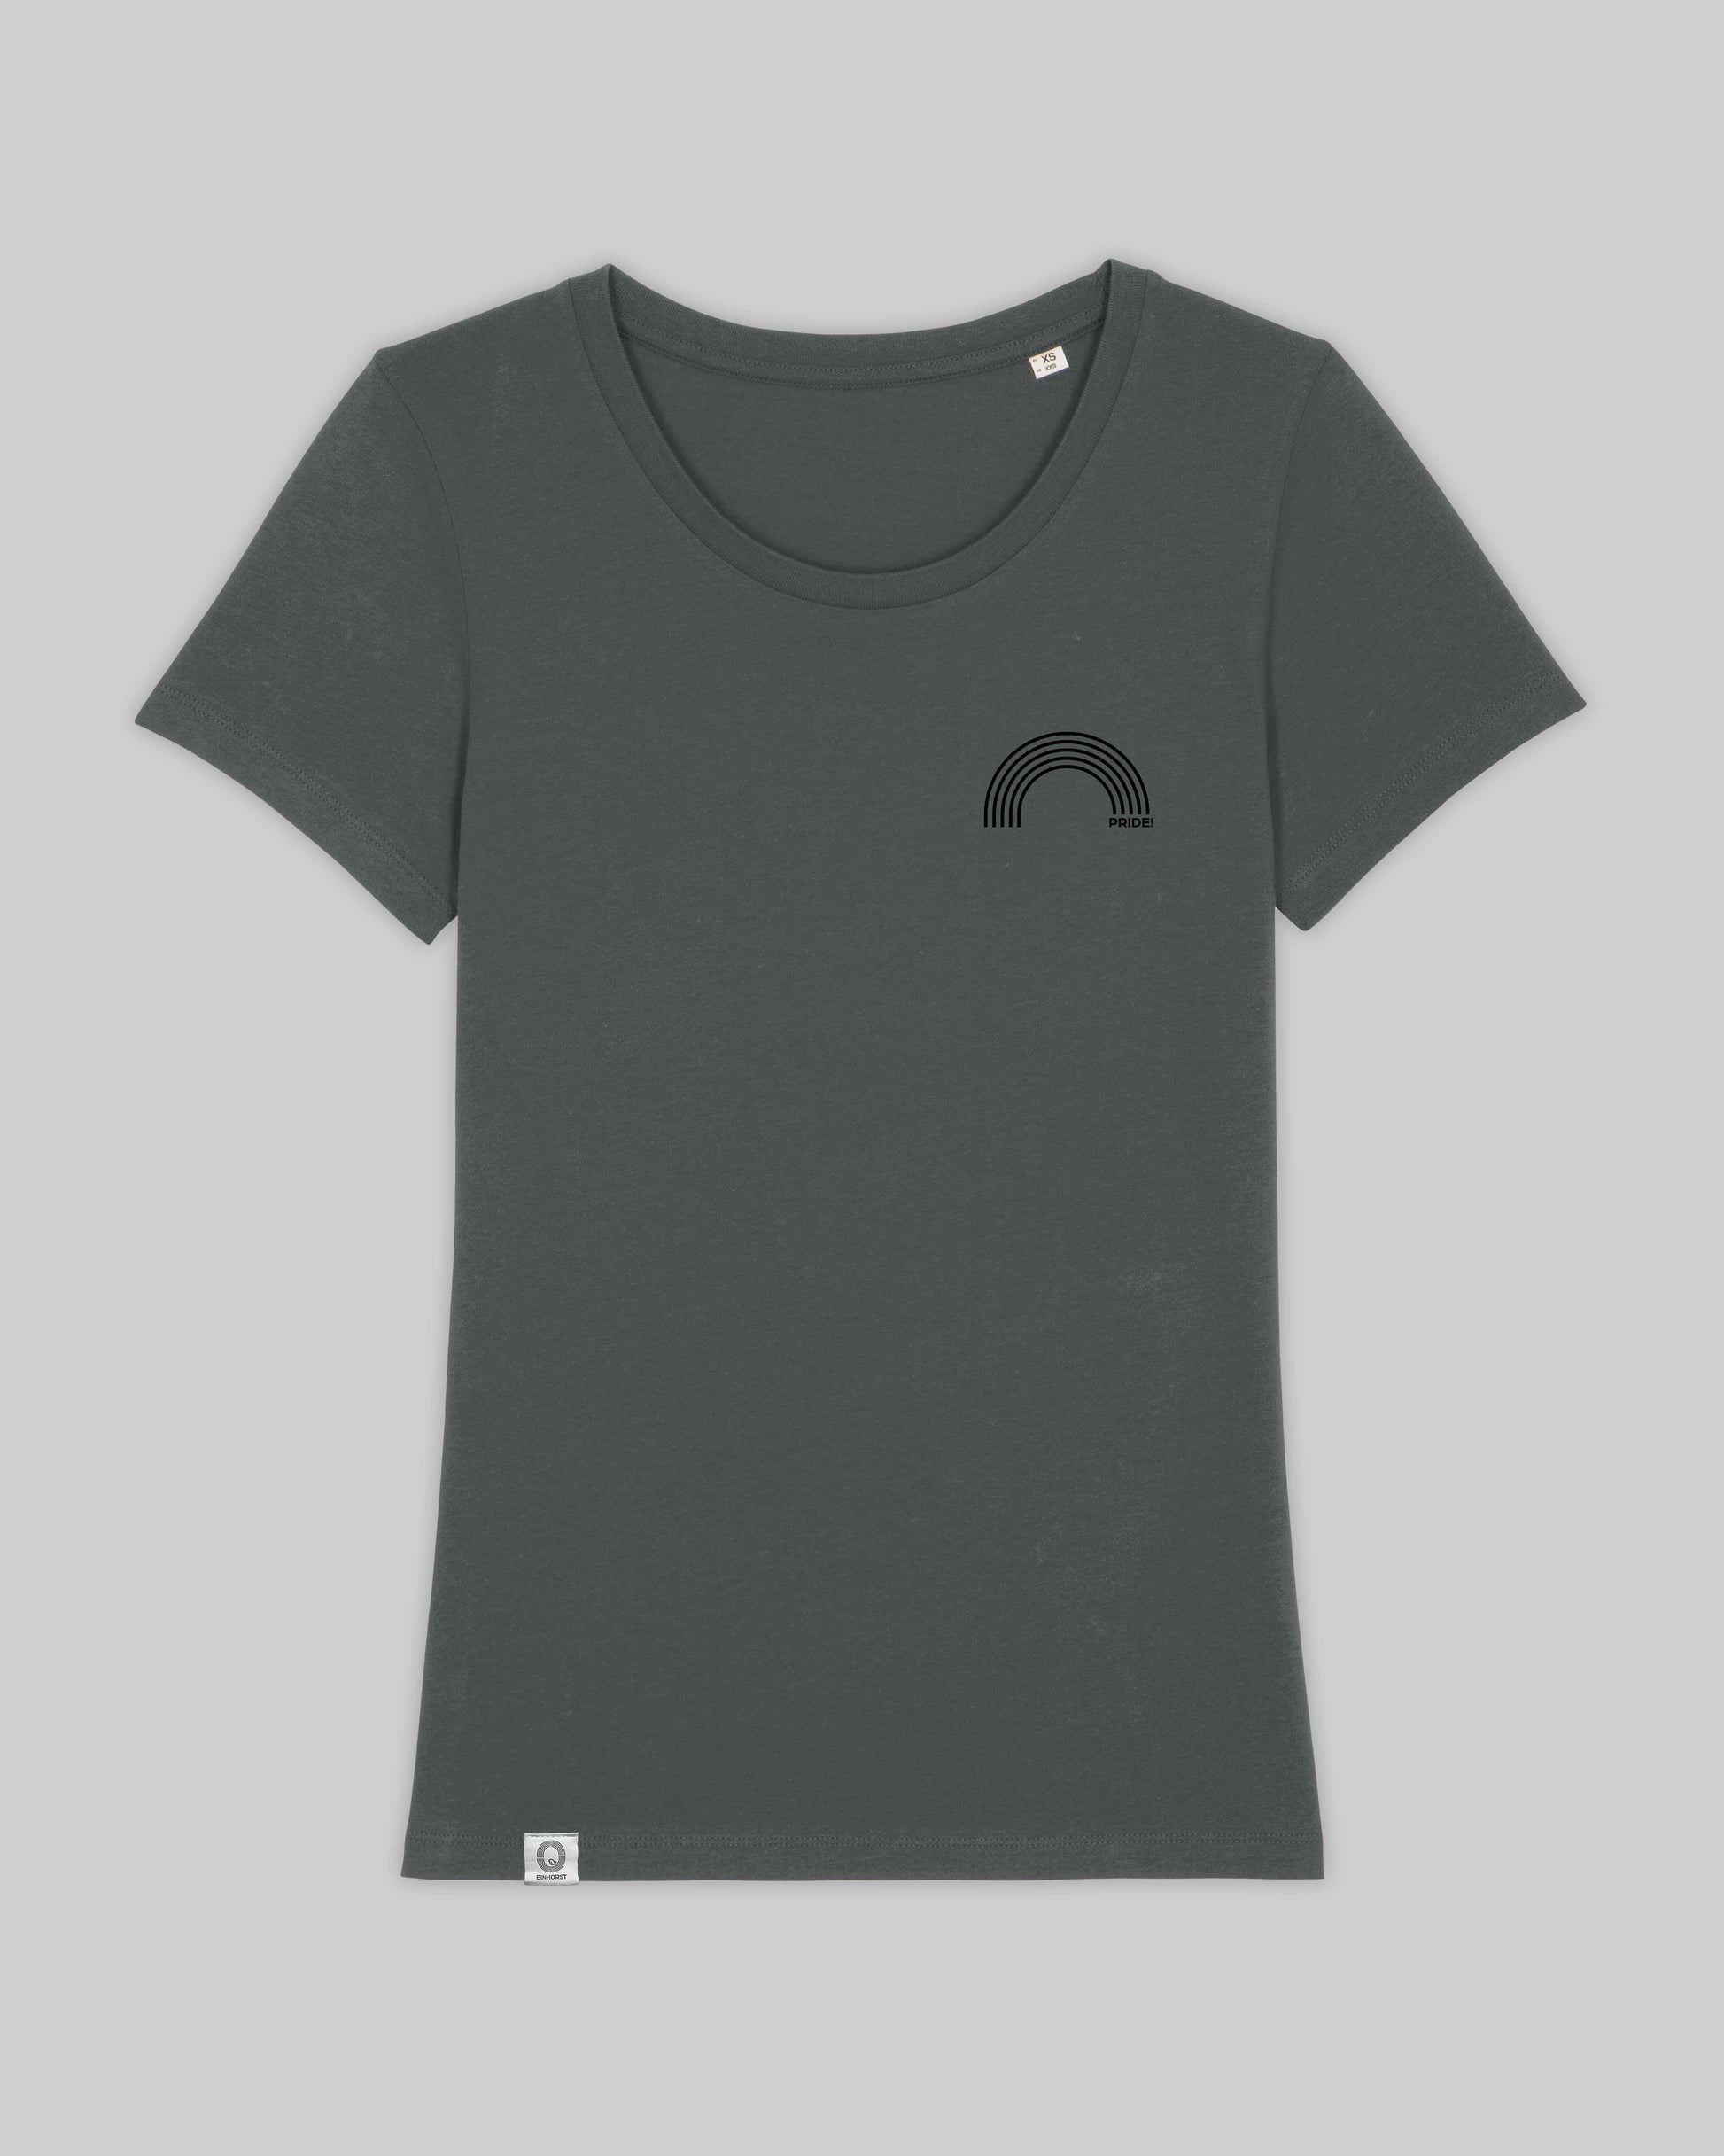 EINHORST® Organic Shirt tailliert in "Anthracite" mit dem Motiv "pride Regenbogen" in der Kombination schwarzer Regenbogen mit schwarzer Schrift, Bild von Shirt von vorne